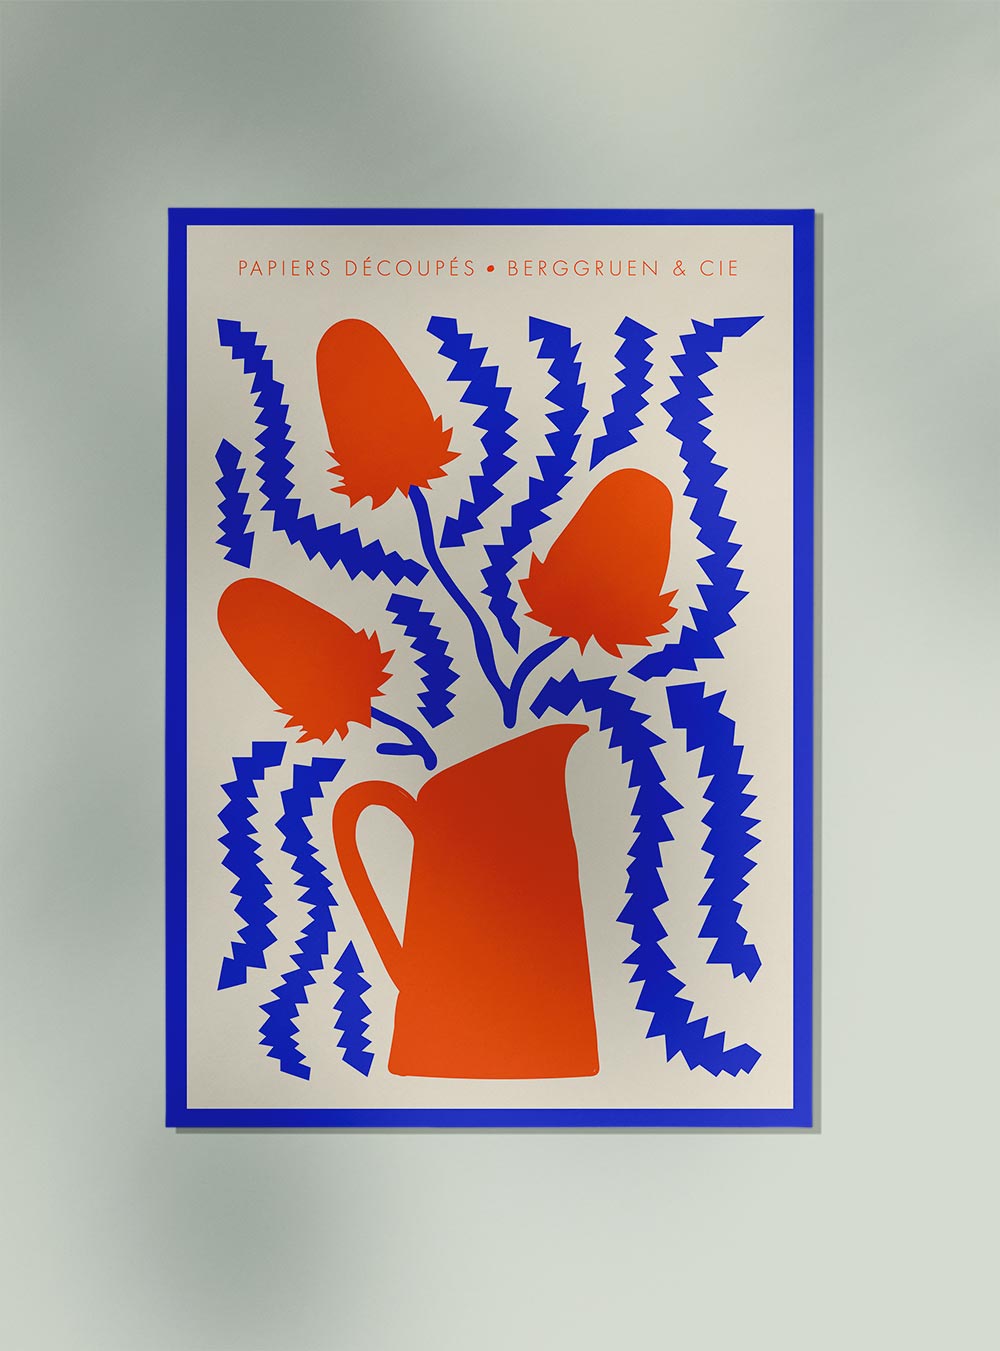 Jug Flowers Blue and Orange Papiers Découpés Art Exhibition Poster